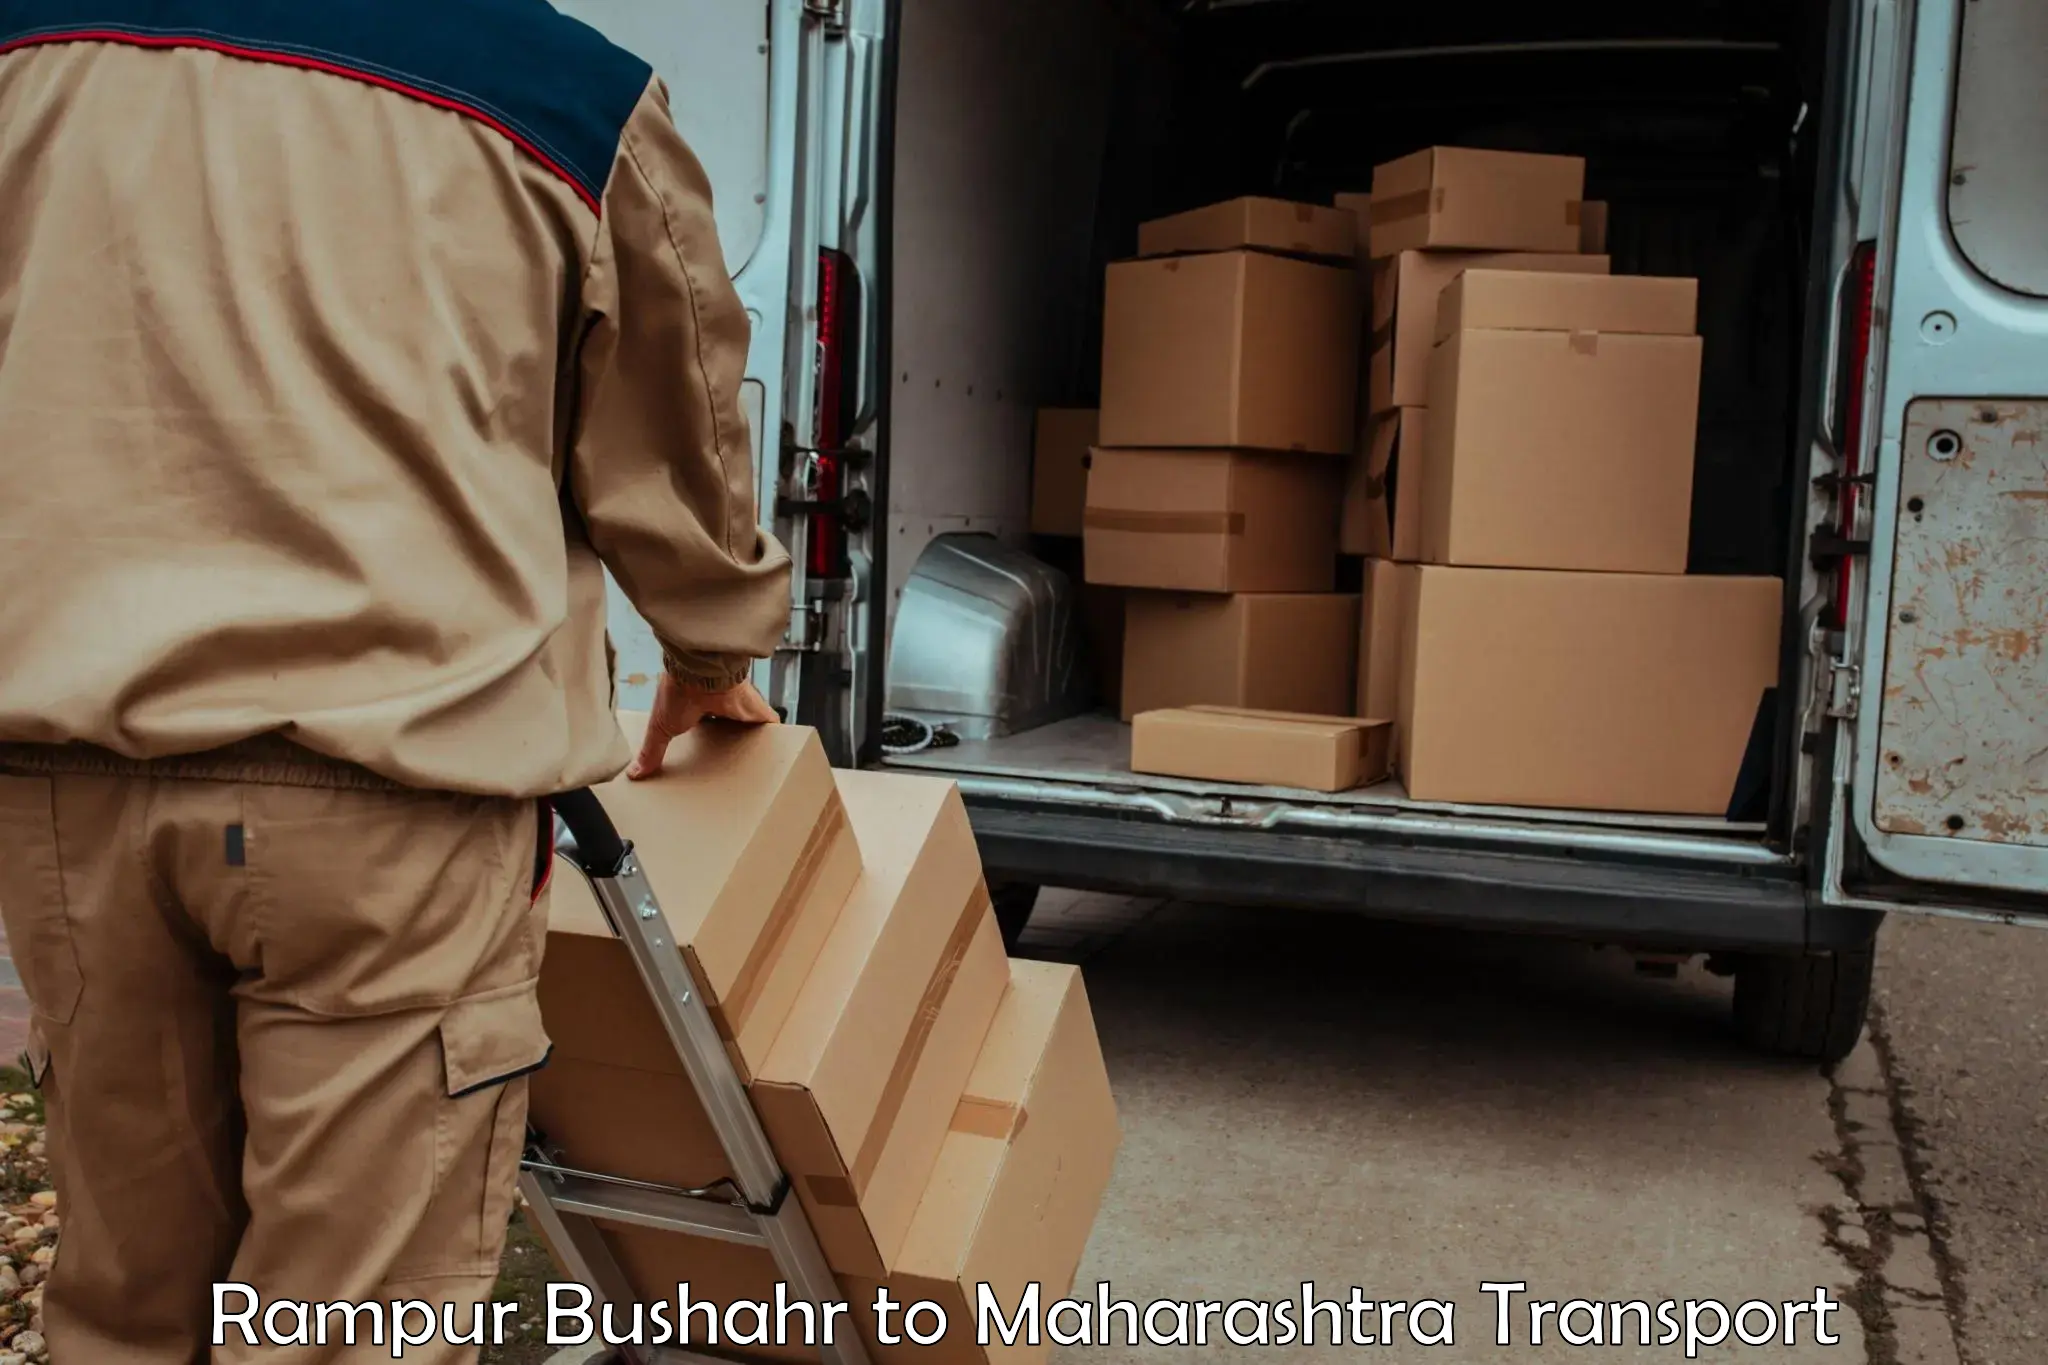 Delivery service Rampur Bushahr to Gadhinglaj